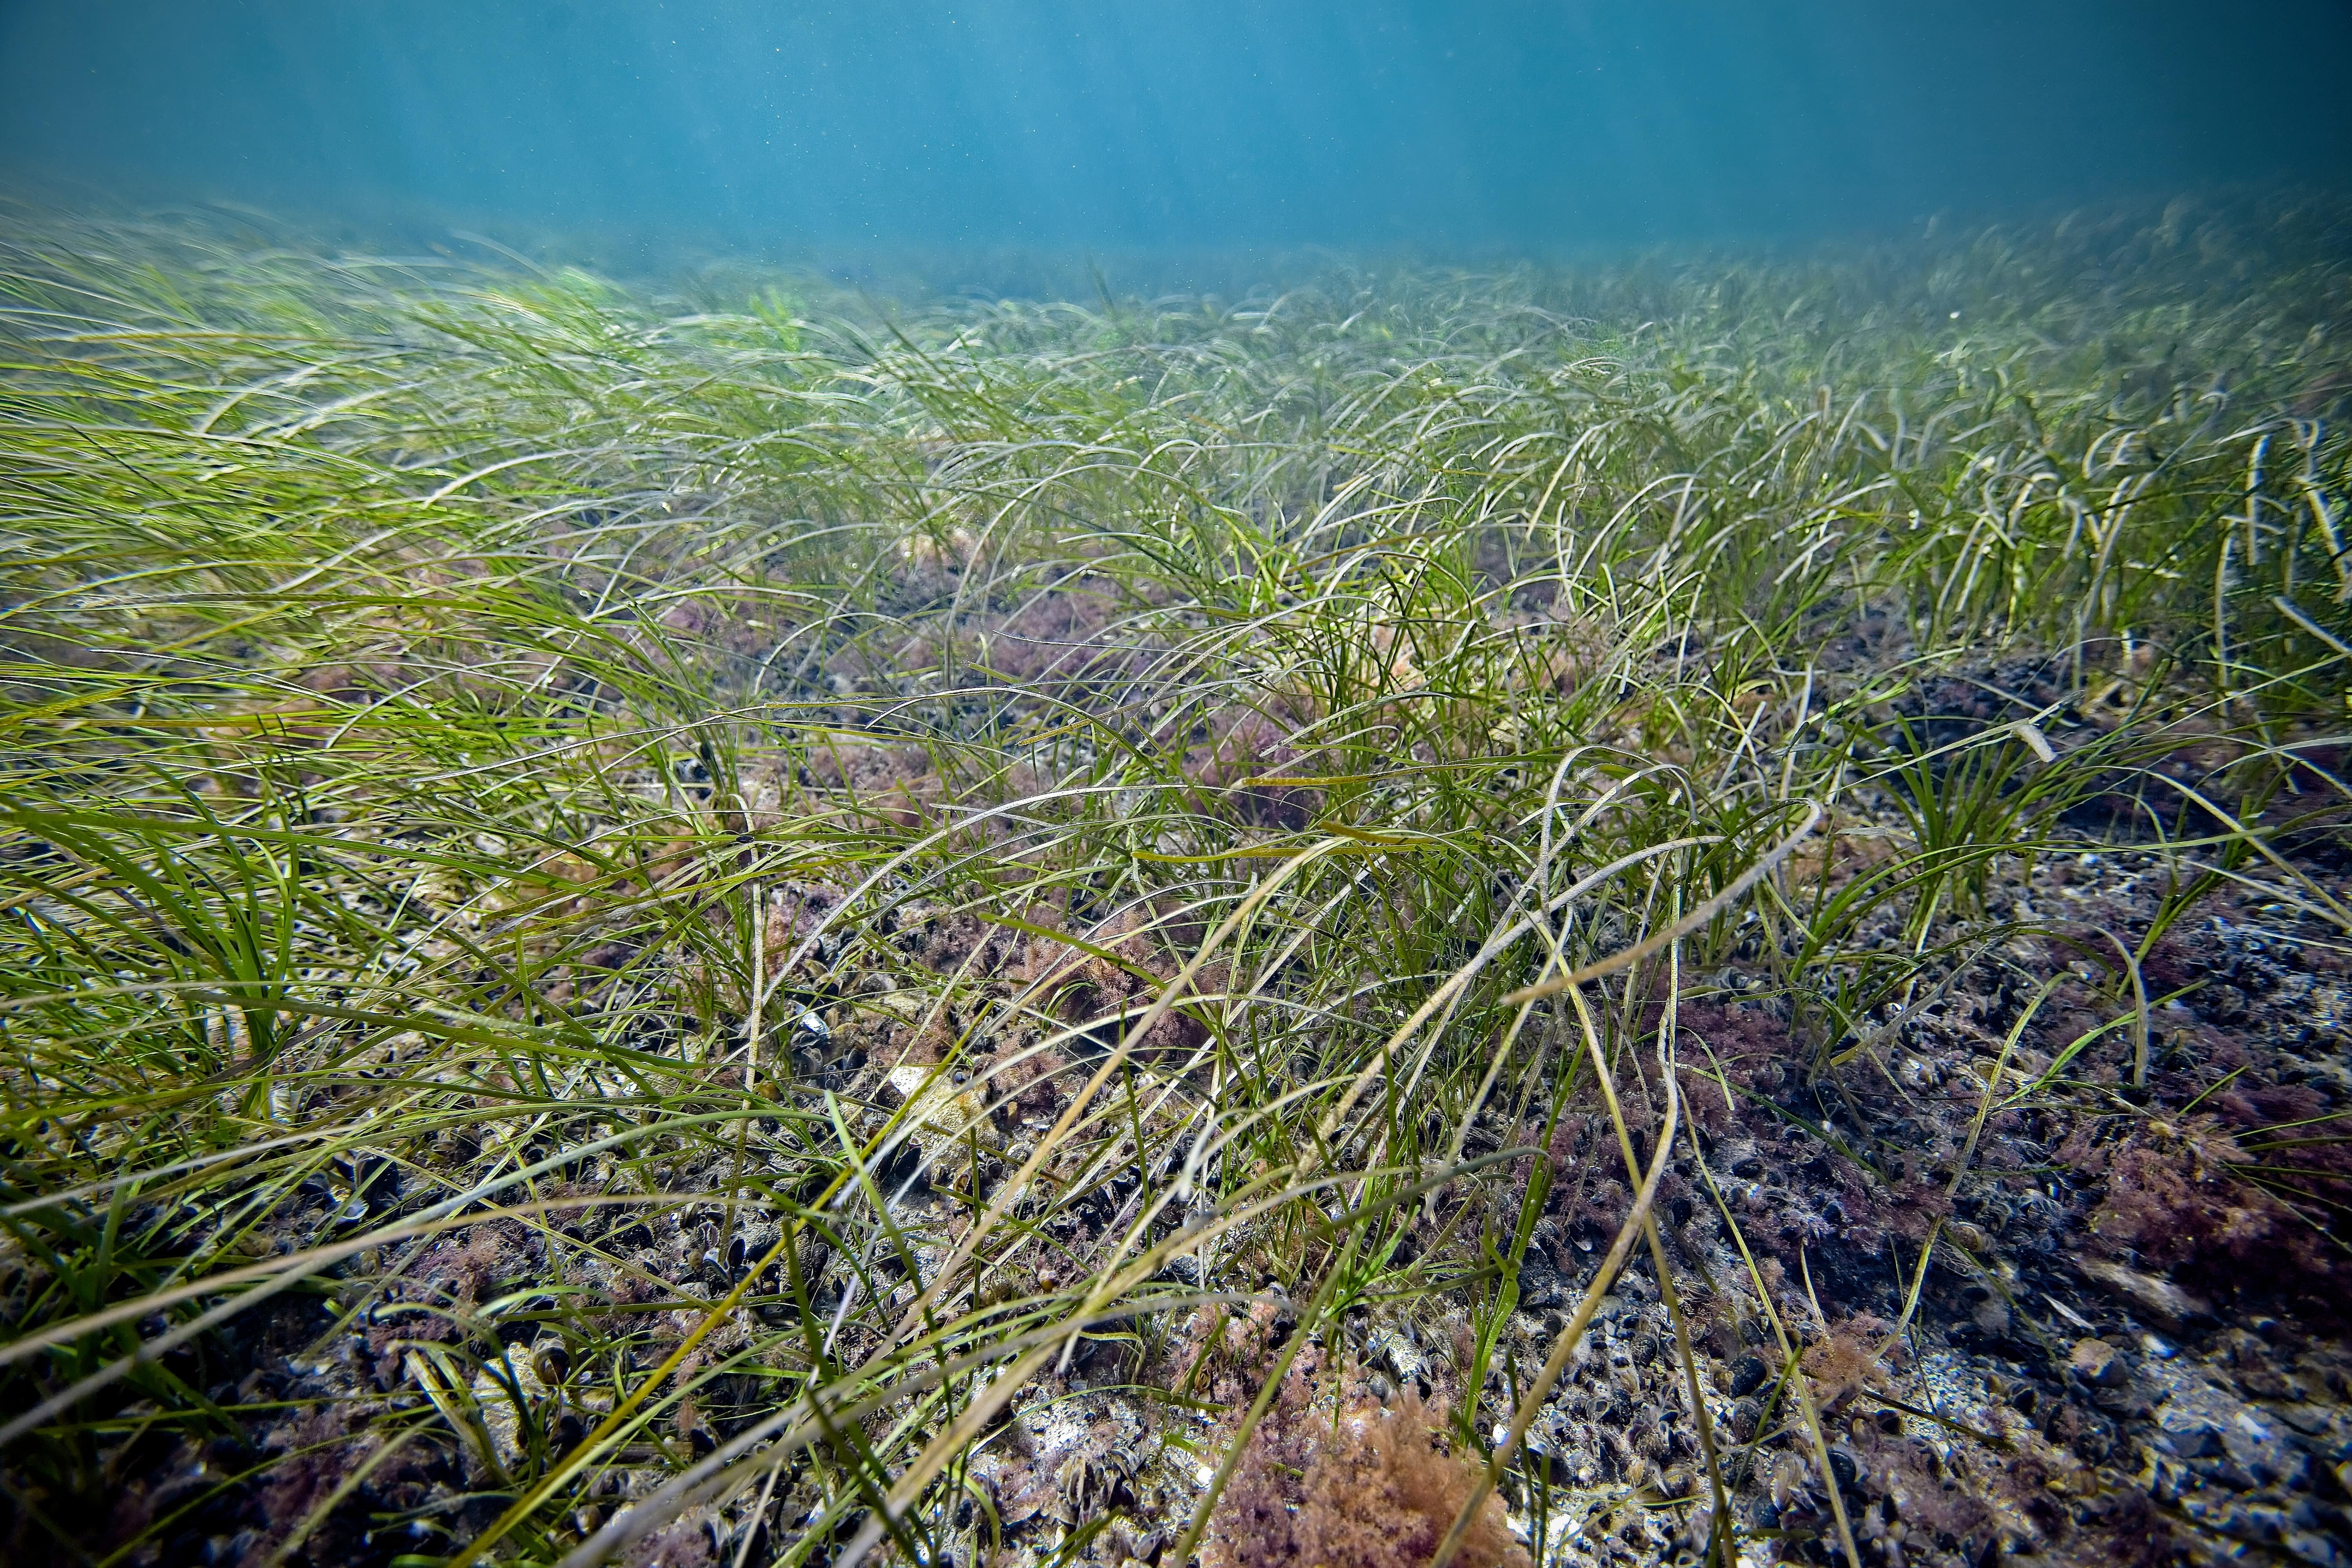 En undervattensbild från Öresund. En botten med sjögräs och klarblått vatten.